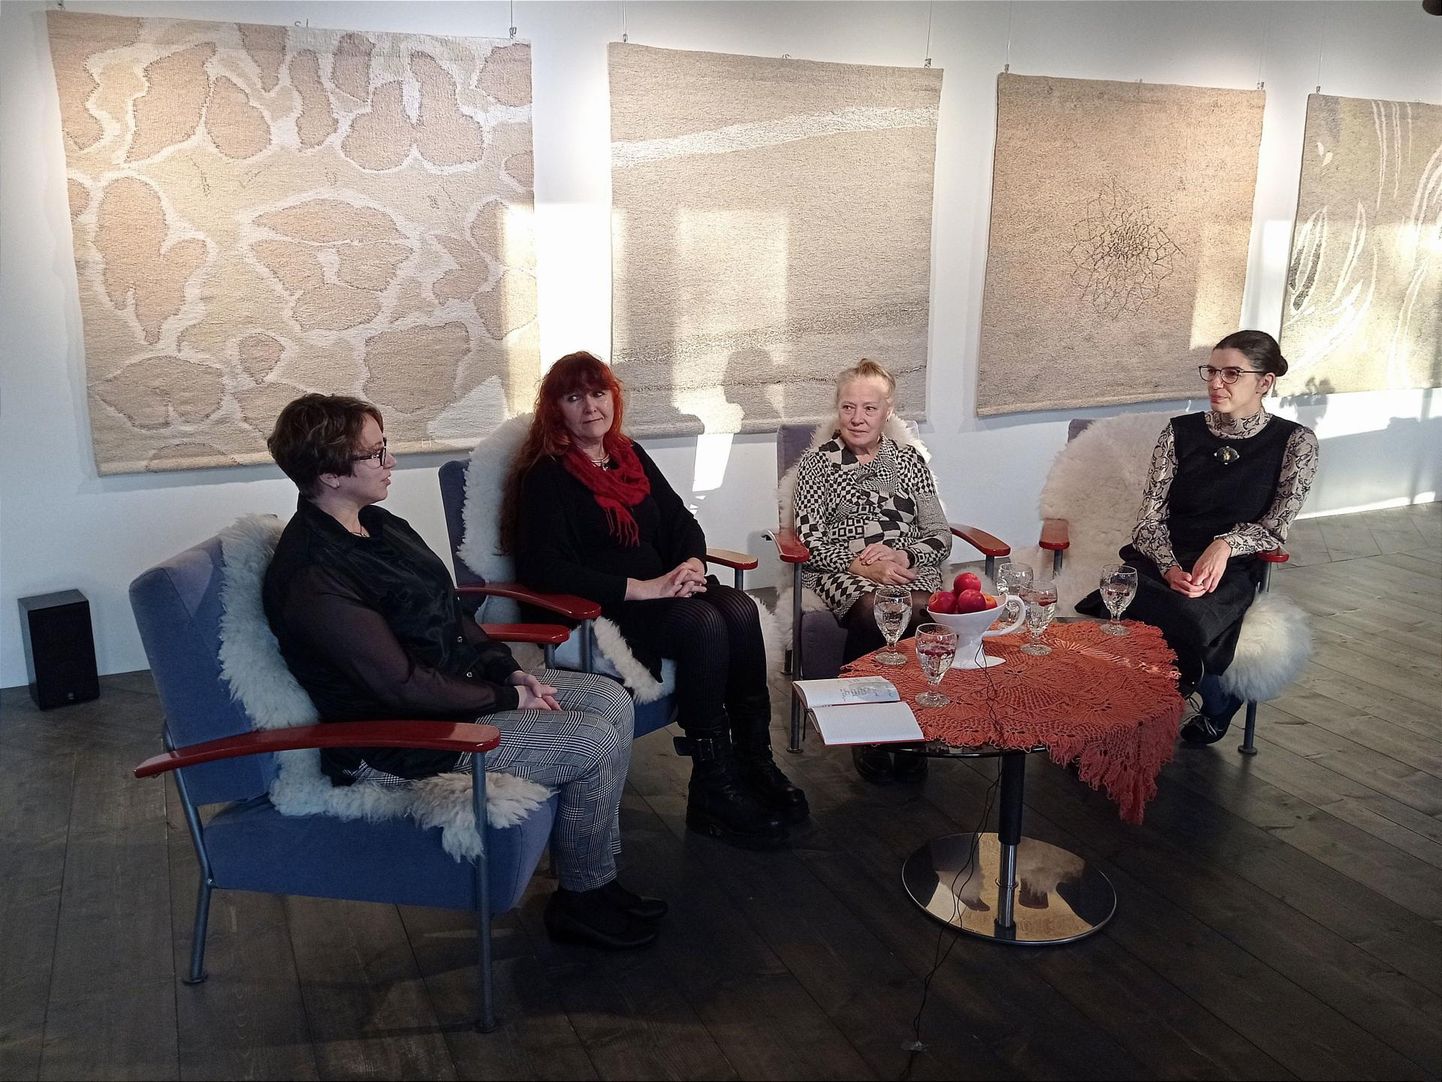 Esna galerii näituse avamisel lõid vestlusringi kirjandusteadlane ja kultuurivahendaja Aija Sakova (vasakult), tekstiilikunstnik Kaire Tali, näituse autor Ehalill Halliste ja näituse kuraator Lilian Bristol.